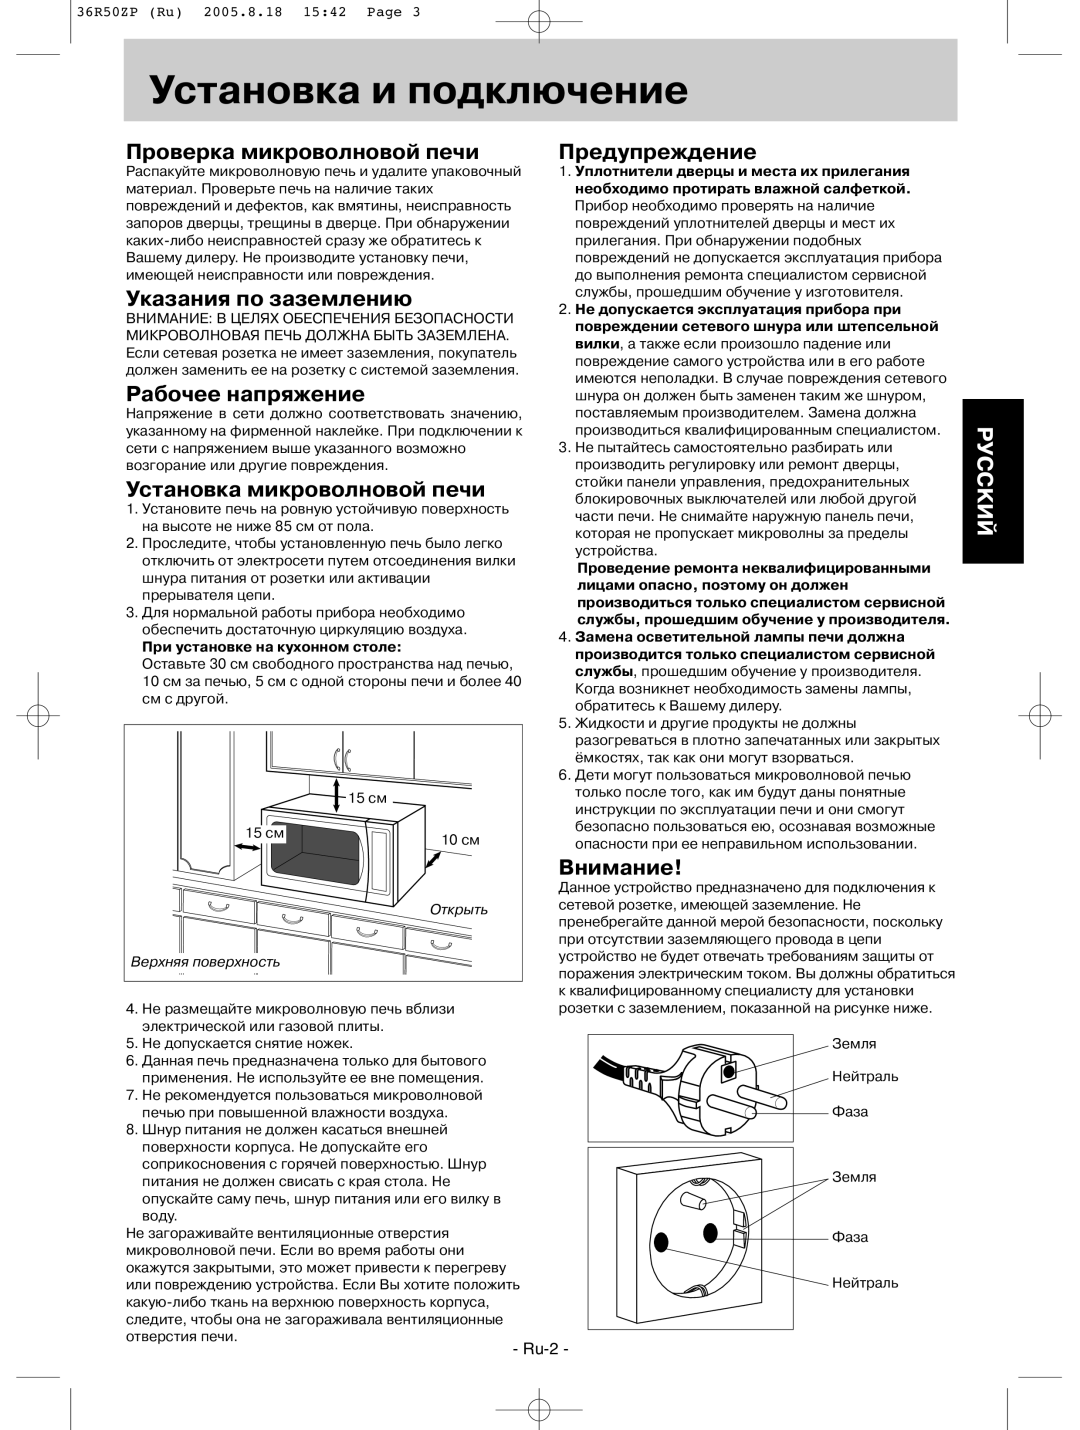 Panasonic NN-G315WF Установка и подключение, Проверка микроволновой печи, Указания по заземлению, Рабочее напряжение, Ru-2 